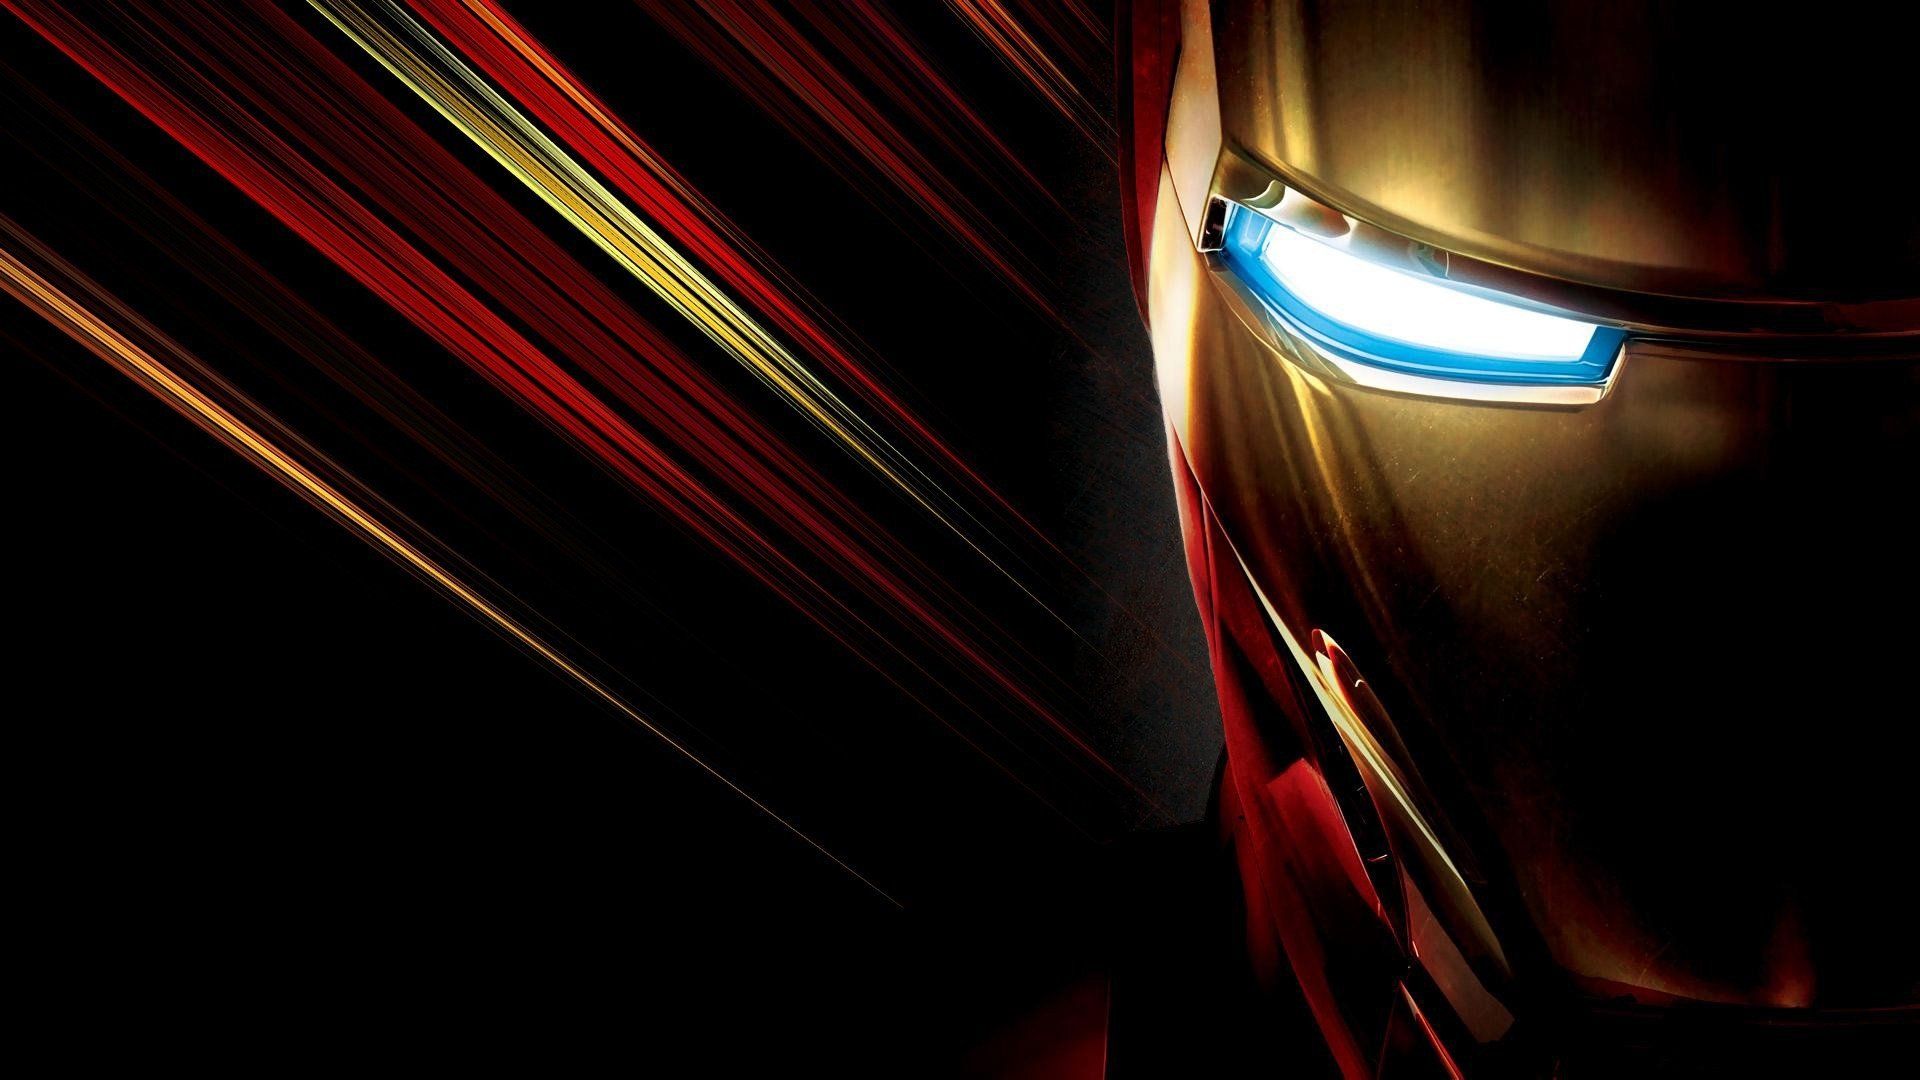 Iron Man HD Wallpapers là sự lựa chọn tốt nhất để tăng tính thẩm mỹ cho màn hình máy tính của bạn. Với độ phân giải từ HD trở lên, bạn có thể tận hưởng những hình ảnh tuyệt đẹp và chân thật về Iron Man. Hãy để những bức ảnh HD này làm cho màn hình của bạn trở nên rực rỡ và đẹp mắt hơn.